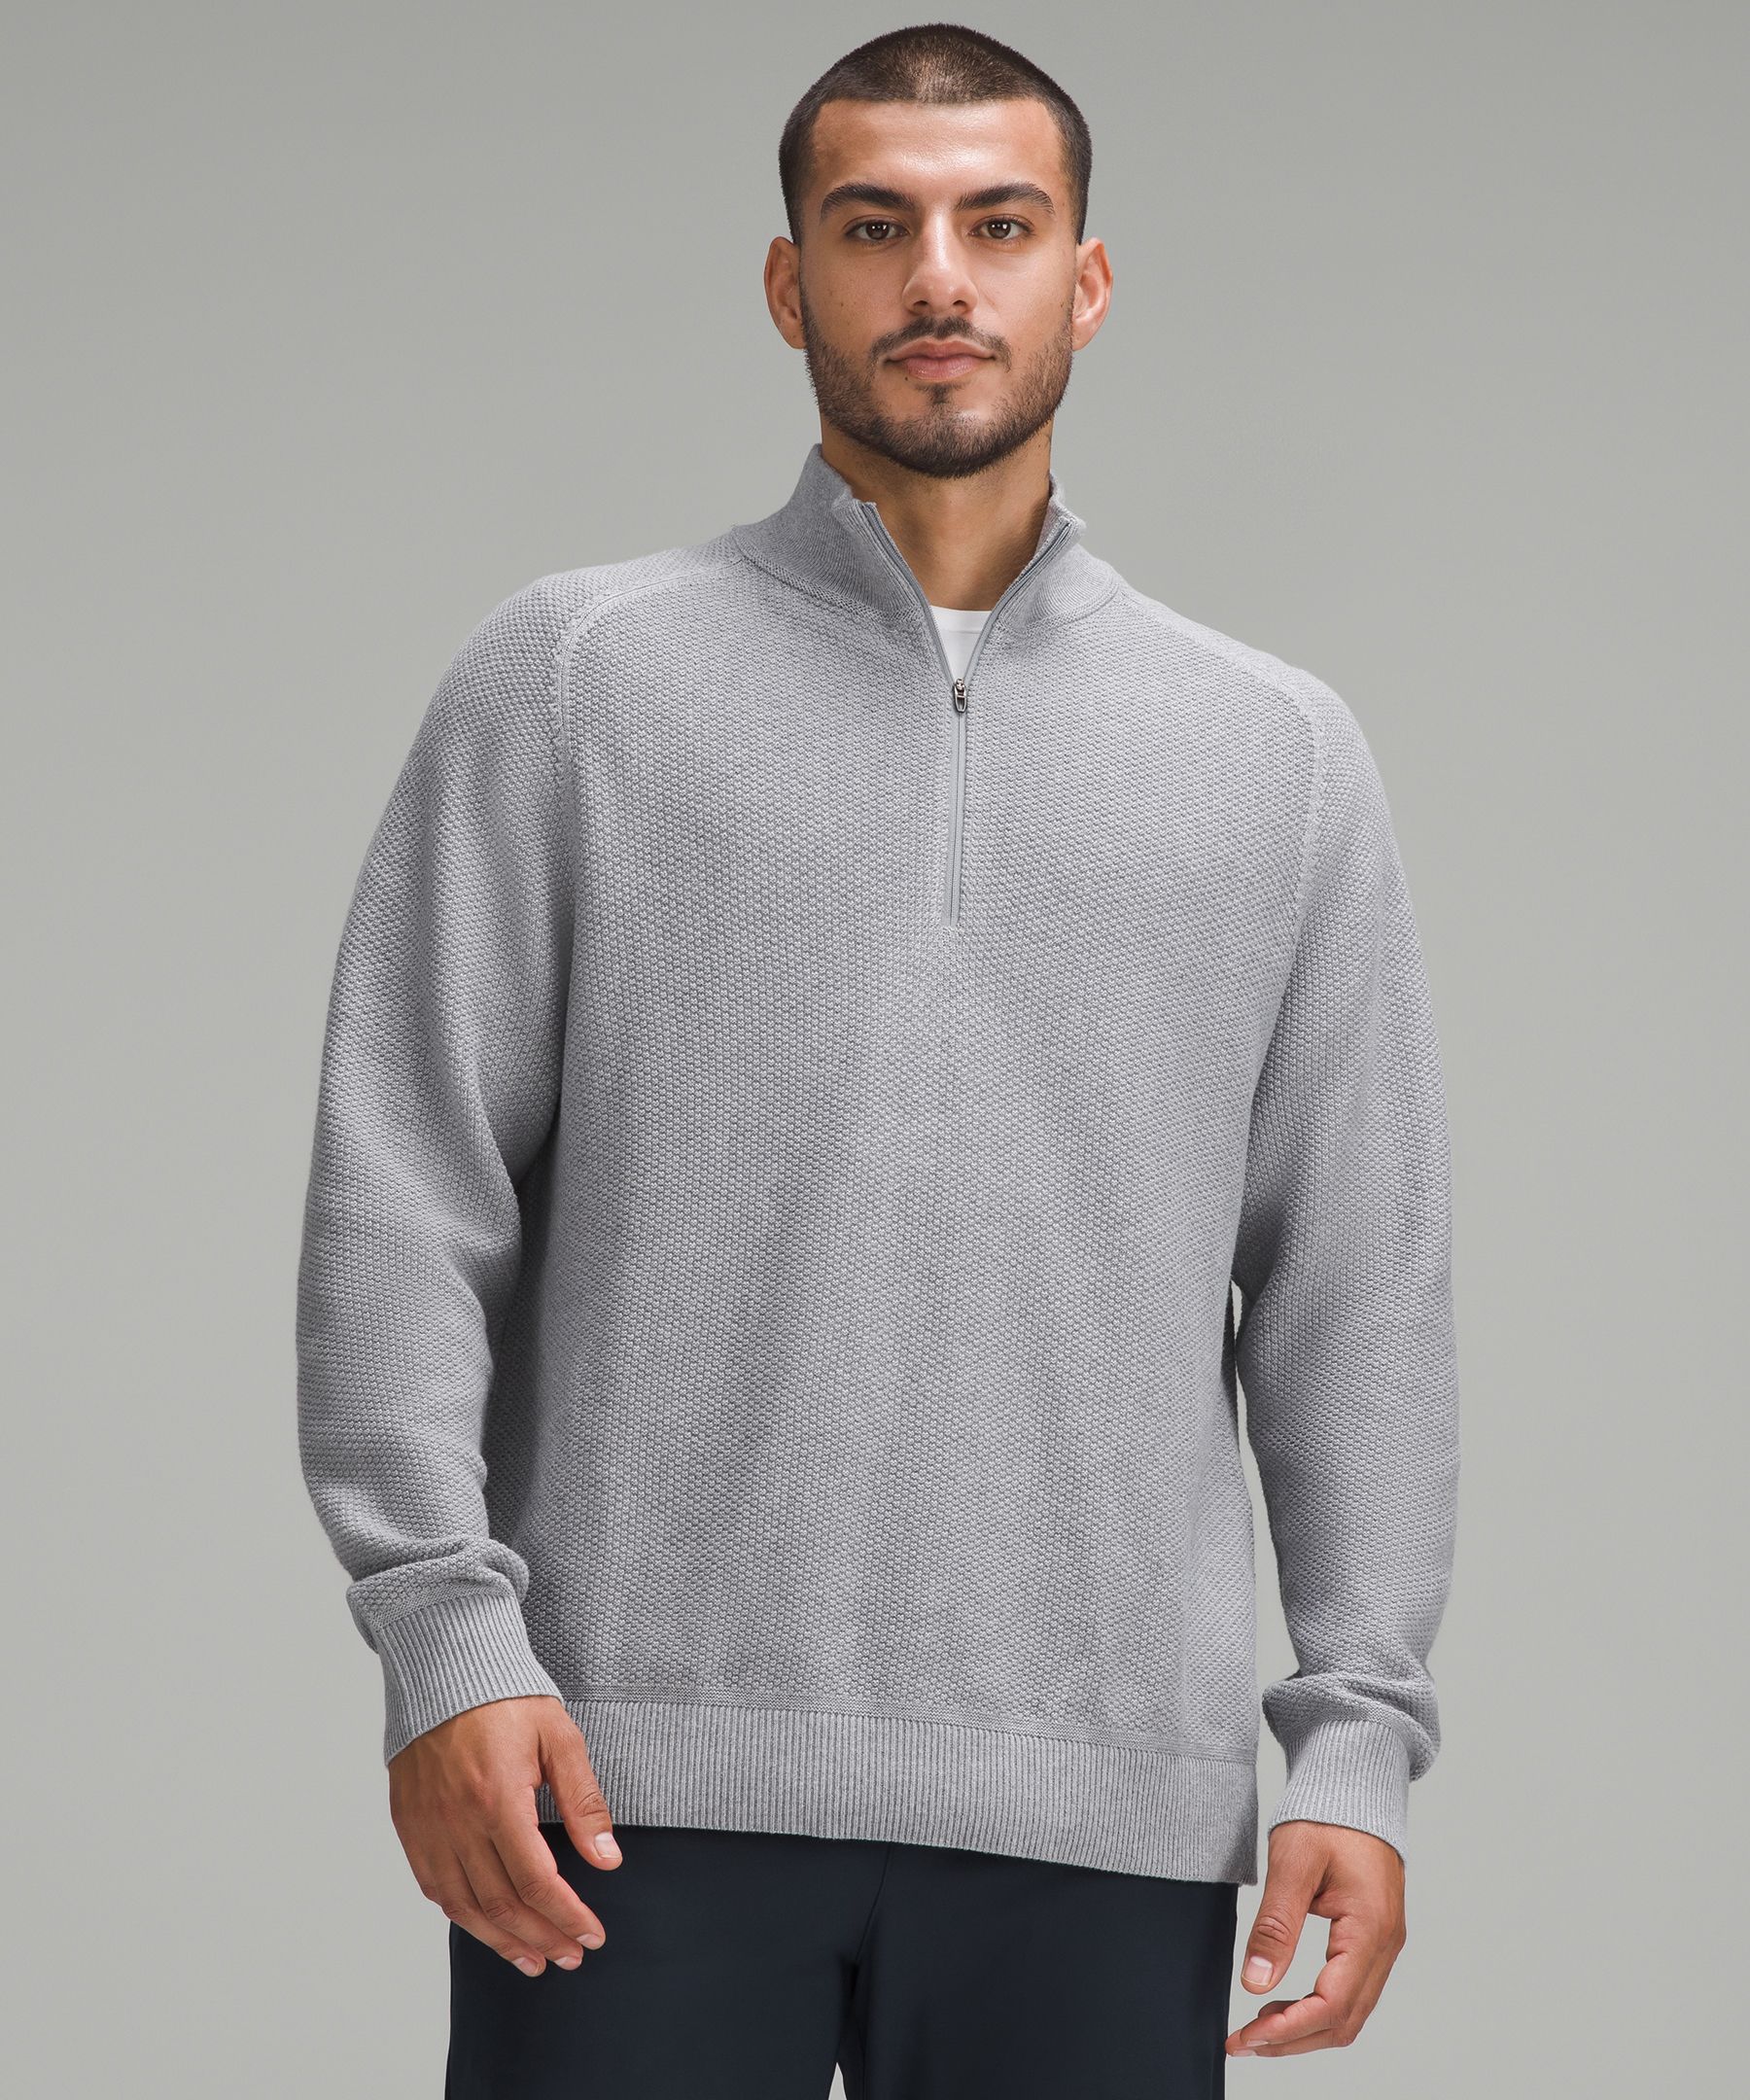 Textured Knit Half-Zip Sweater | Men's Hoodies & Sweatshirts | lululemon